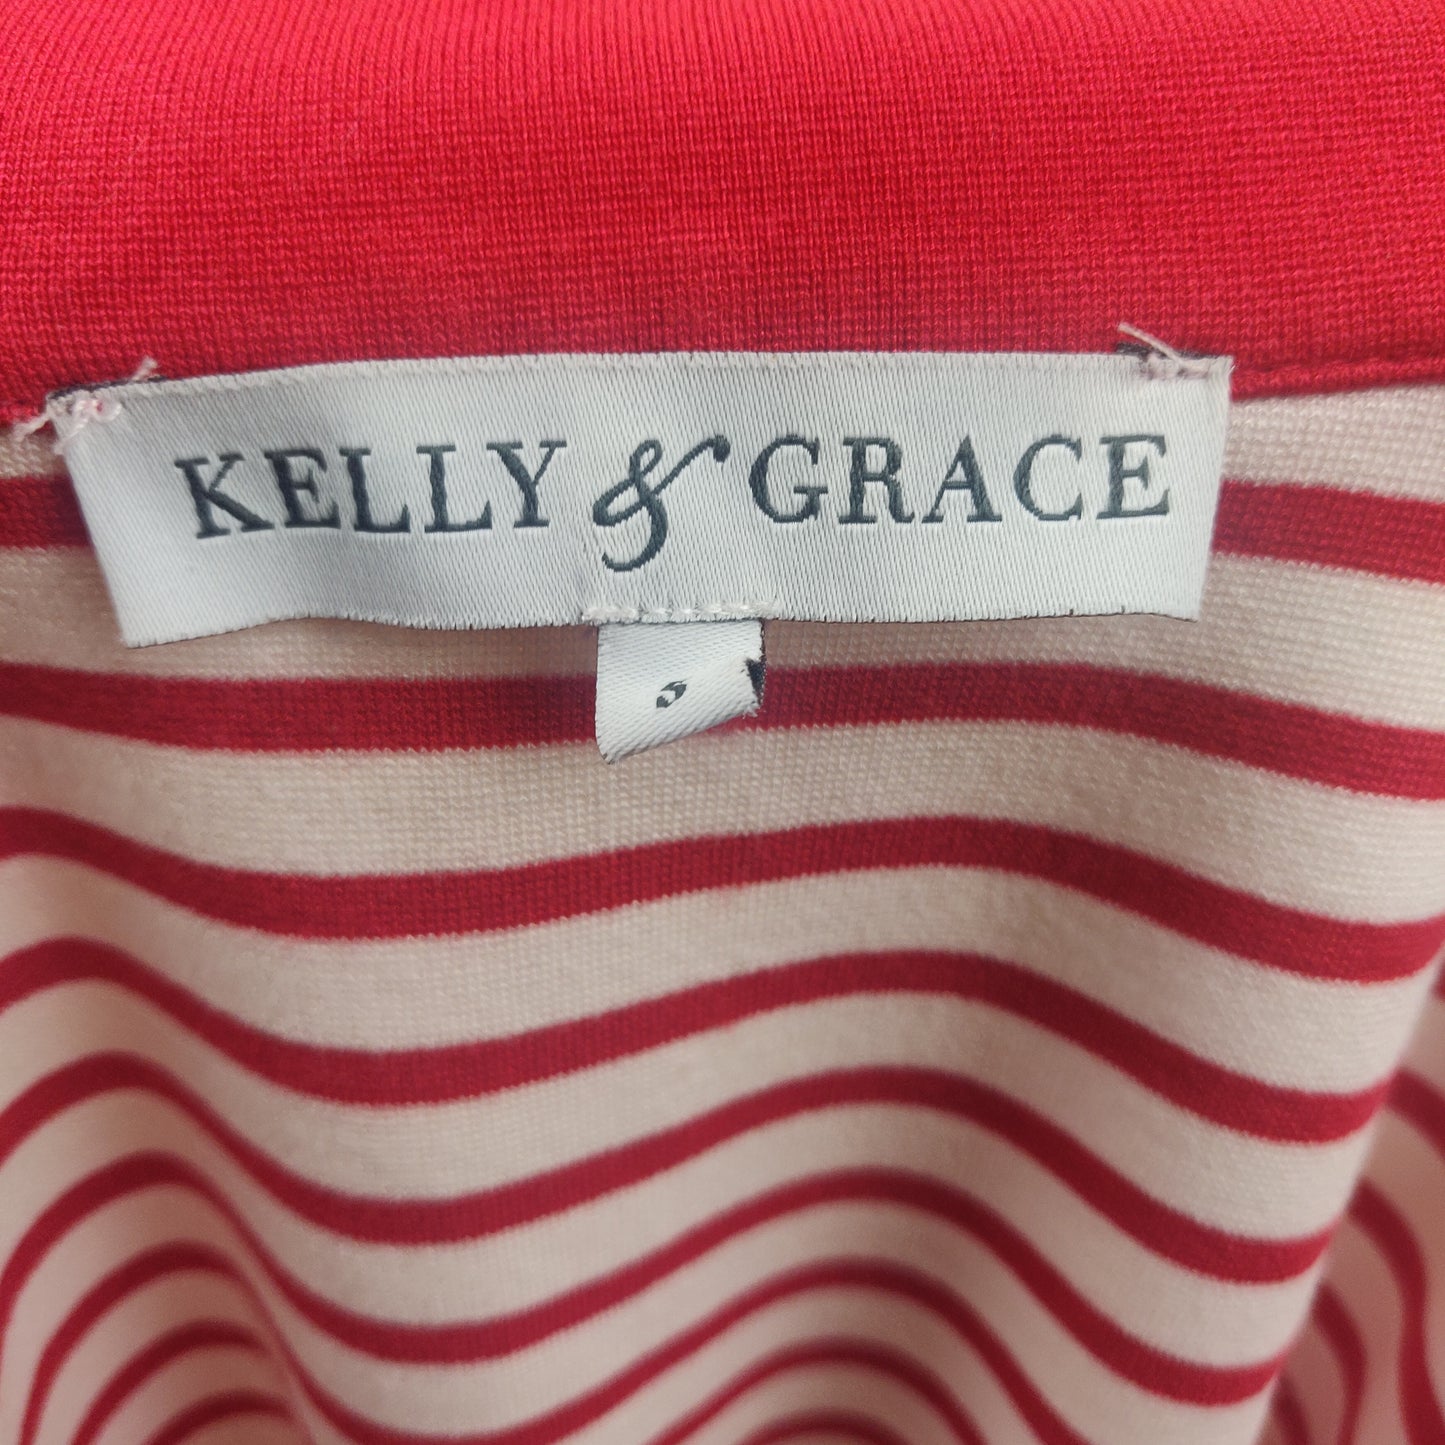 Kelly & Grace White Stripped Sweatshirt Full Zip Women Size Small